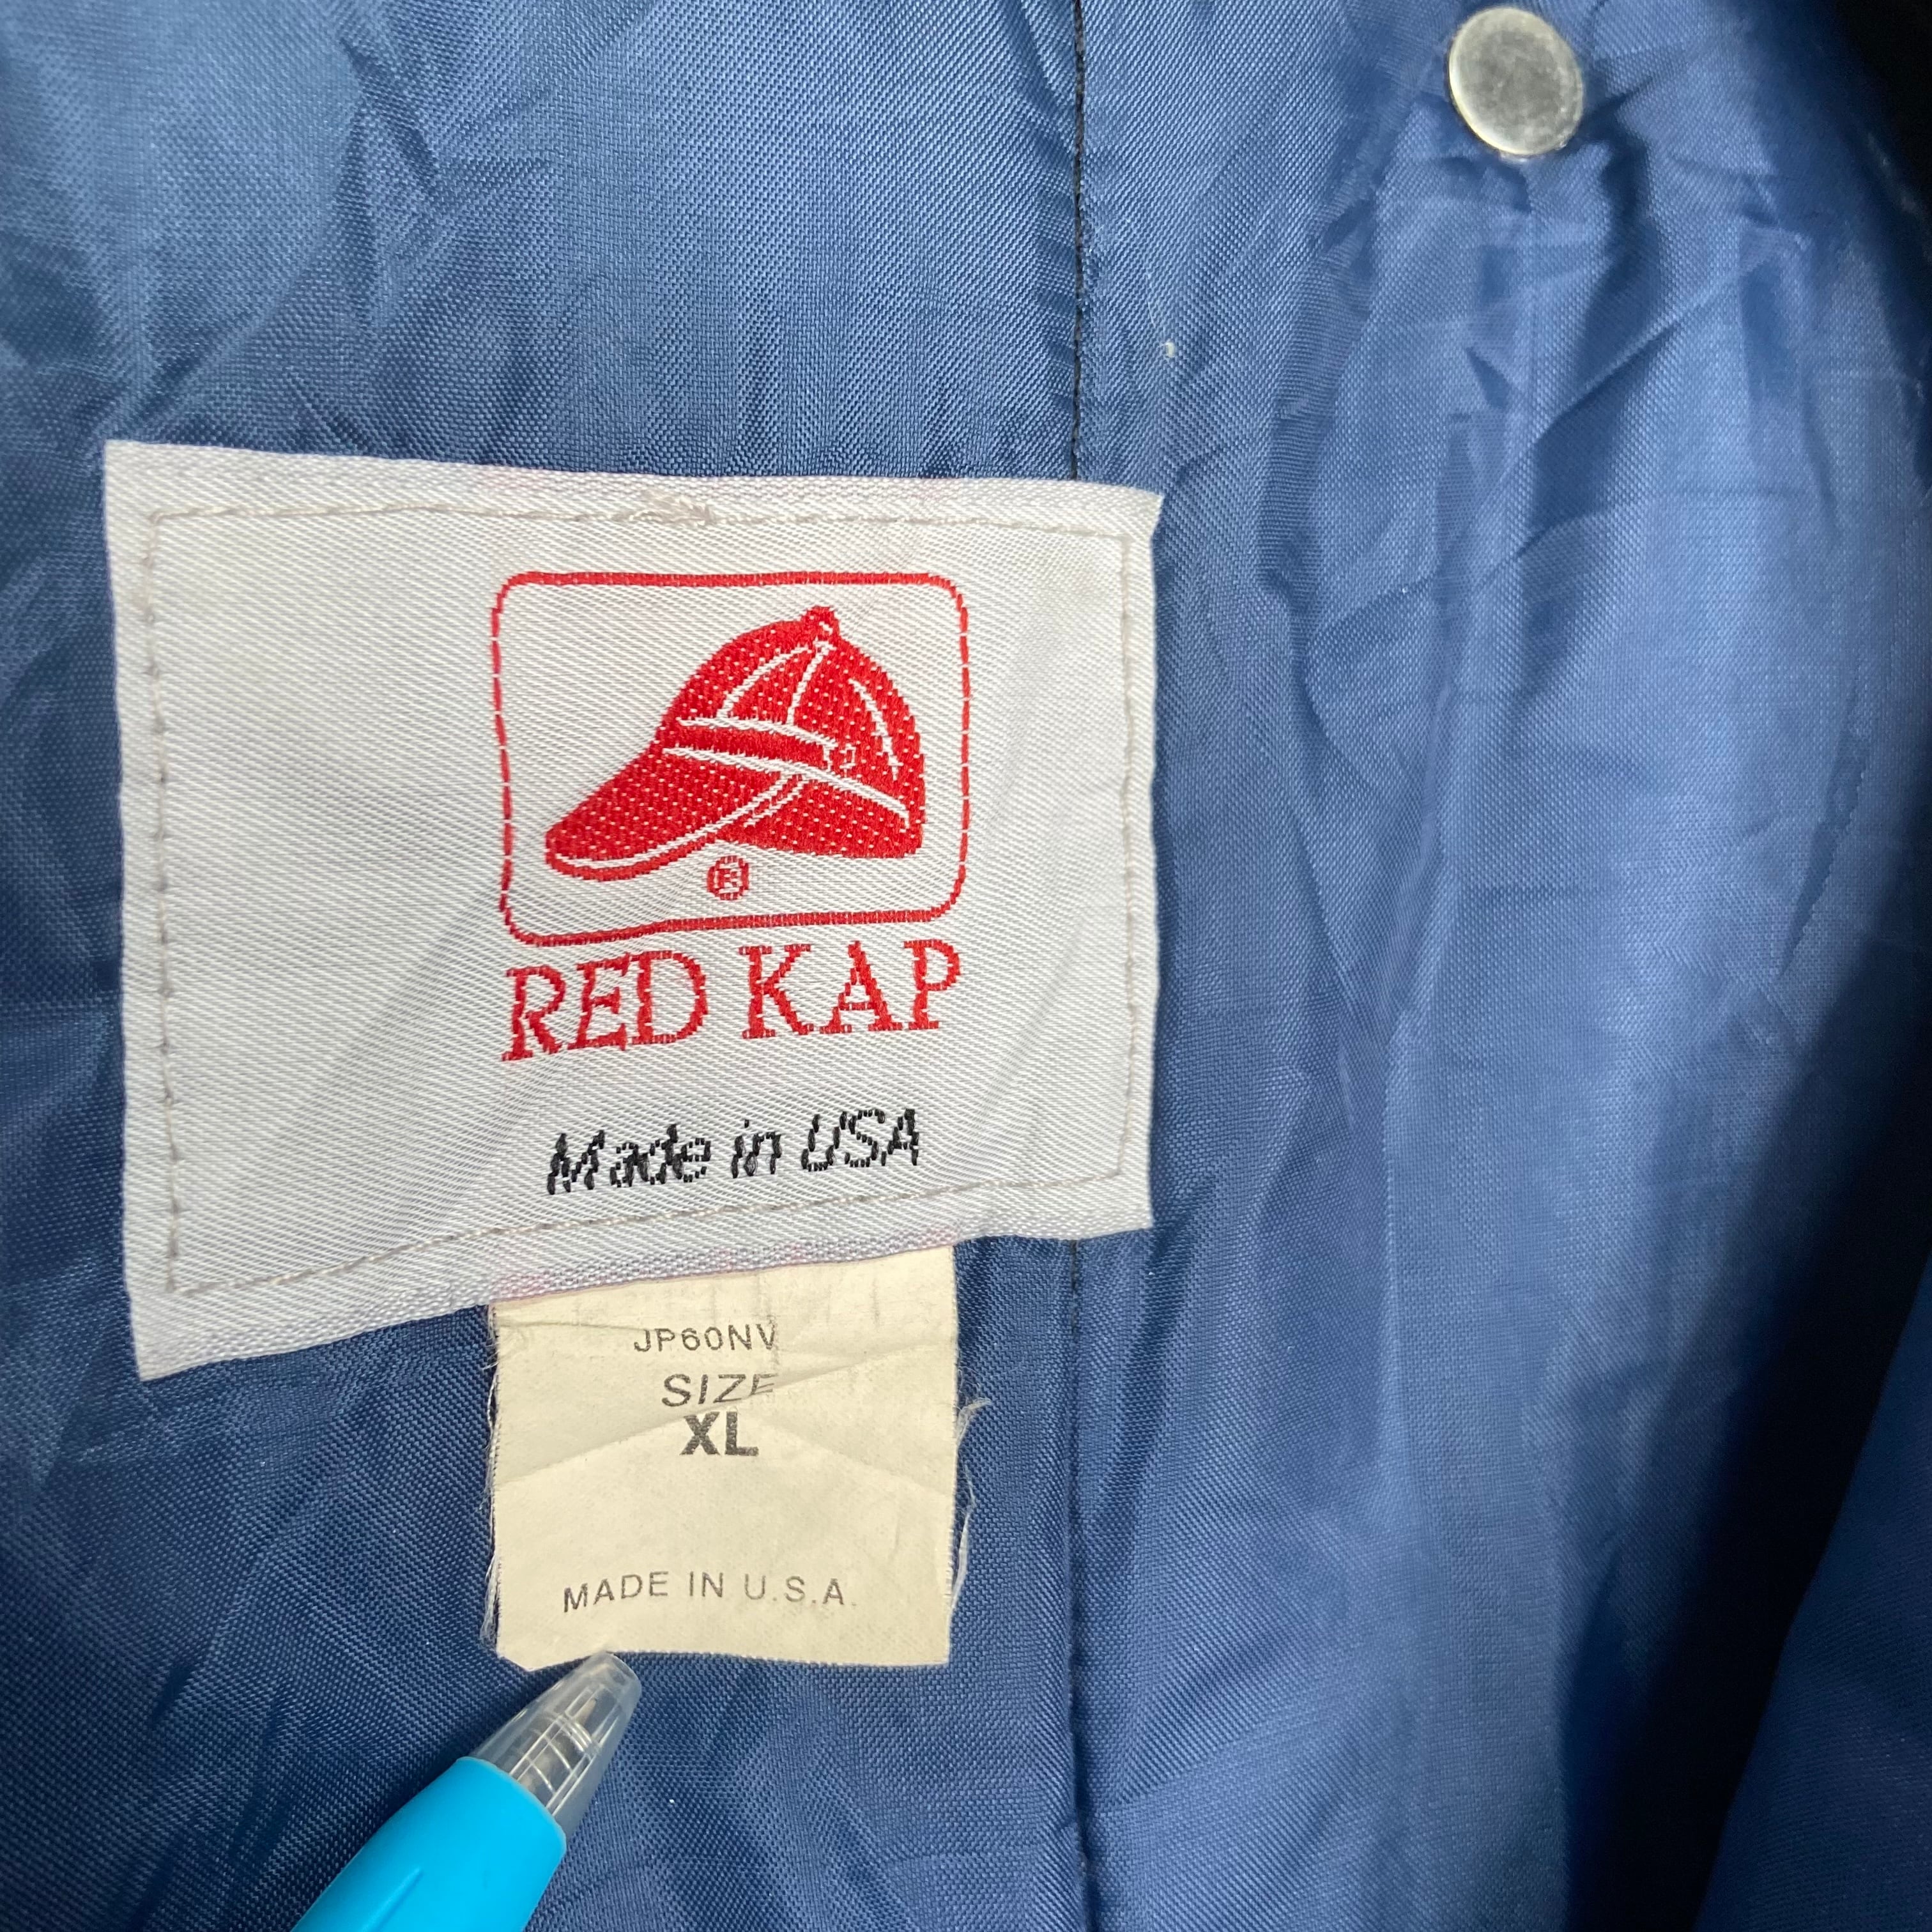 Made in USA】【ラグランスリーブ】RED KAP ワークジャケット XL